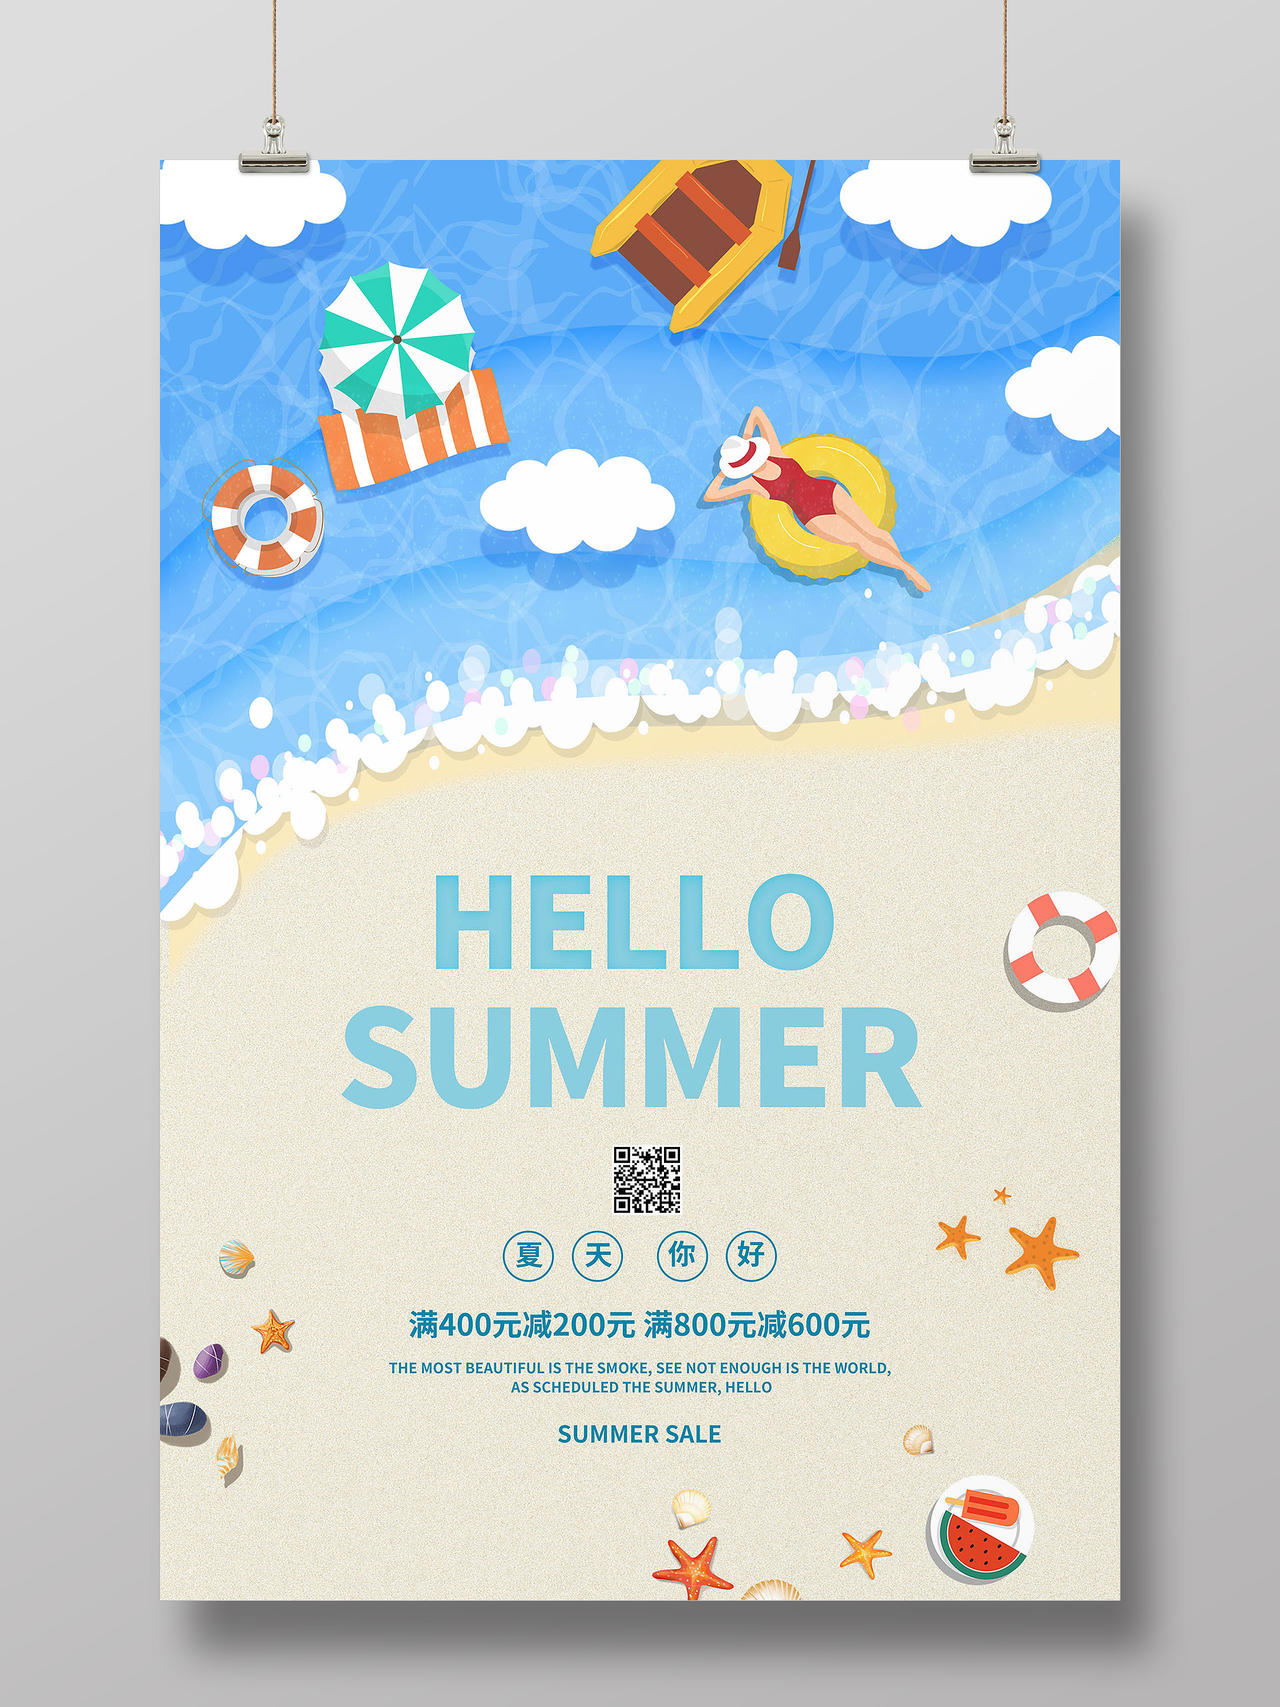 蓝色小清新卡通风格hello summer你好夏天促销宣传海夏天夏季